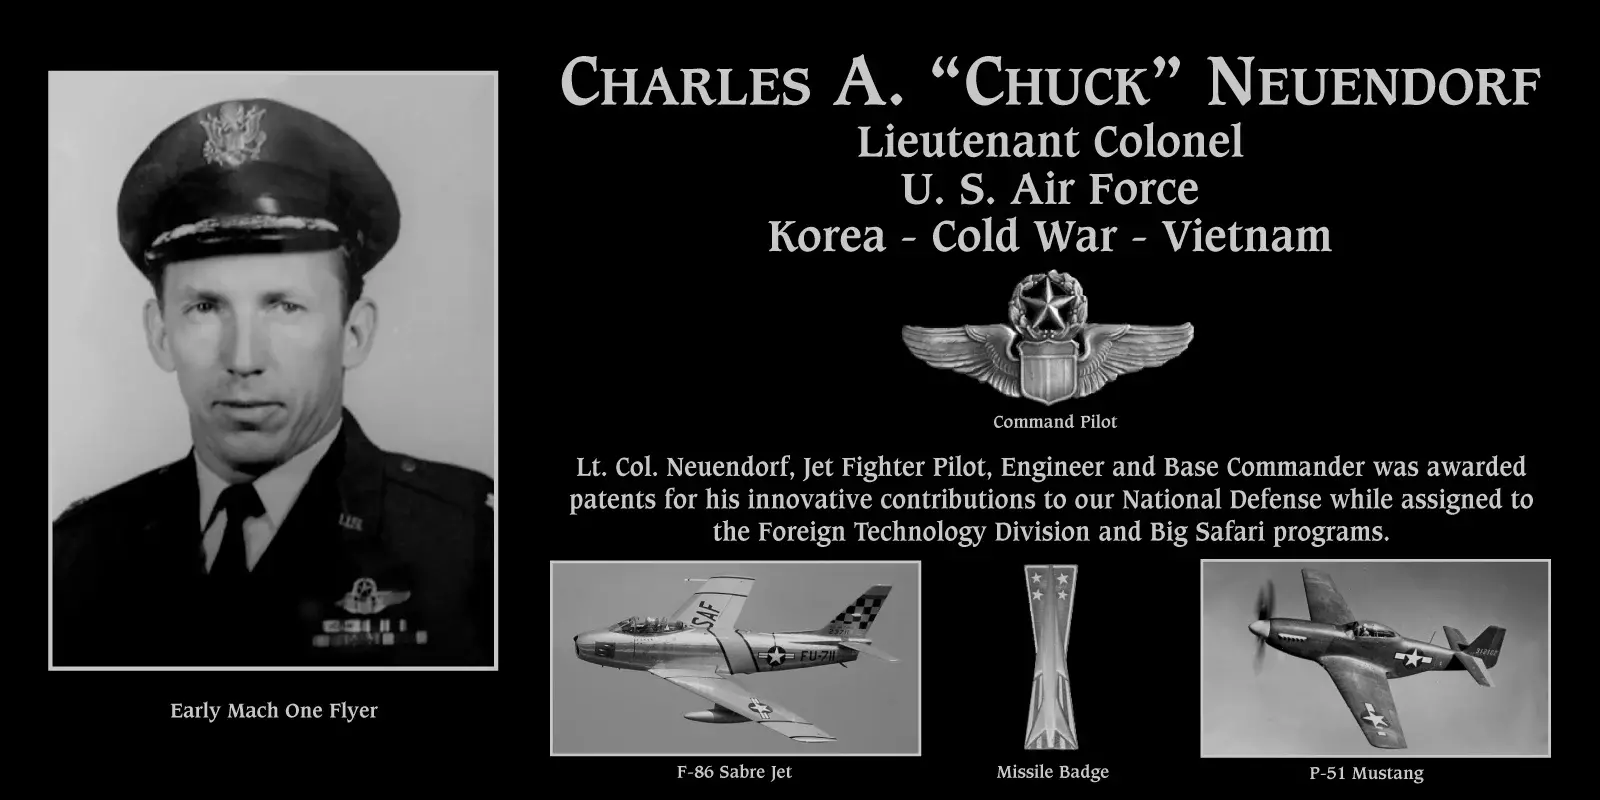 Charles A. “Chuck” Neuendorf